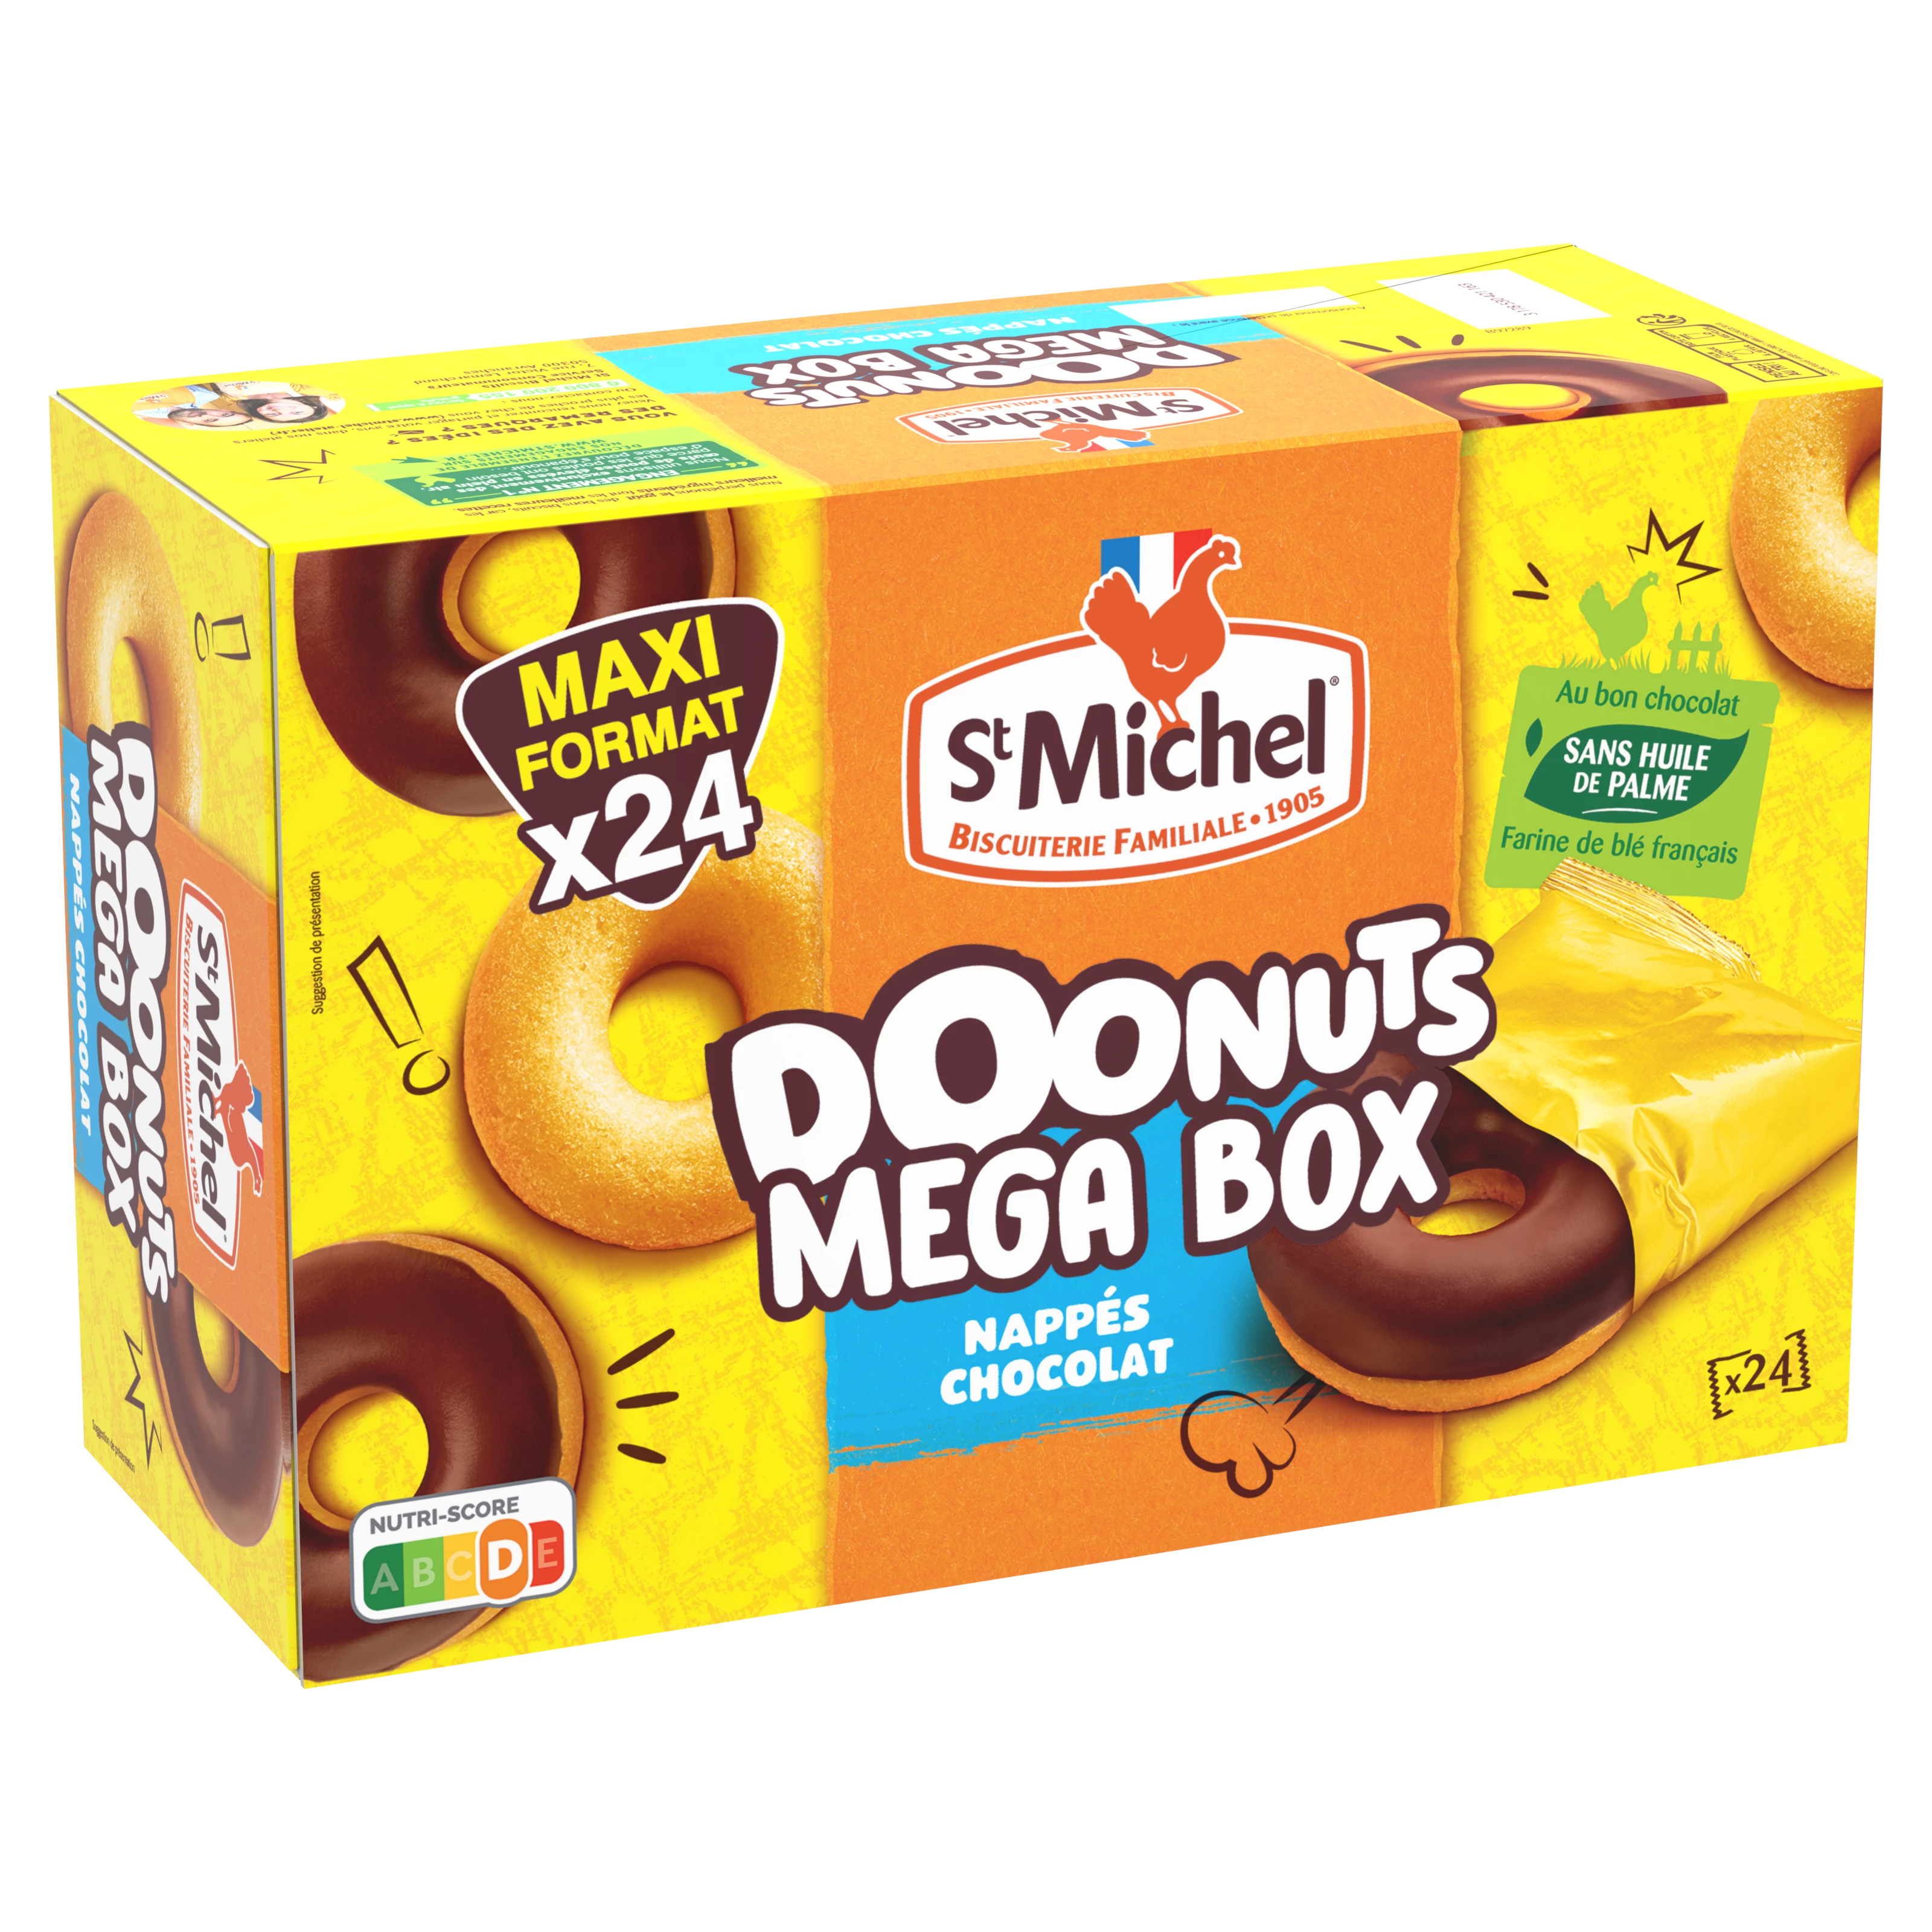 甜甜圈尖盒小睡袋 X24 72 - ST MICHEL